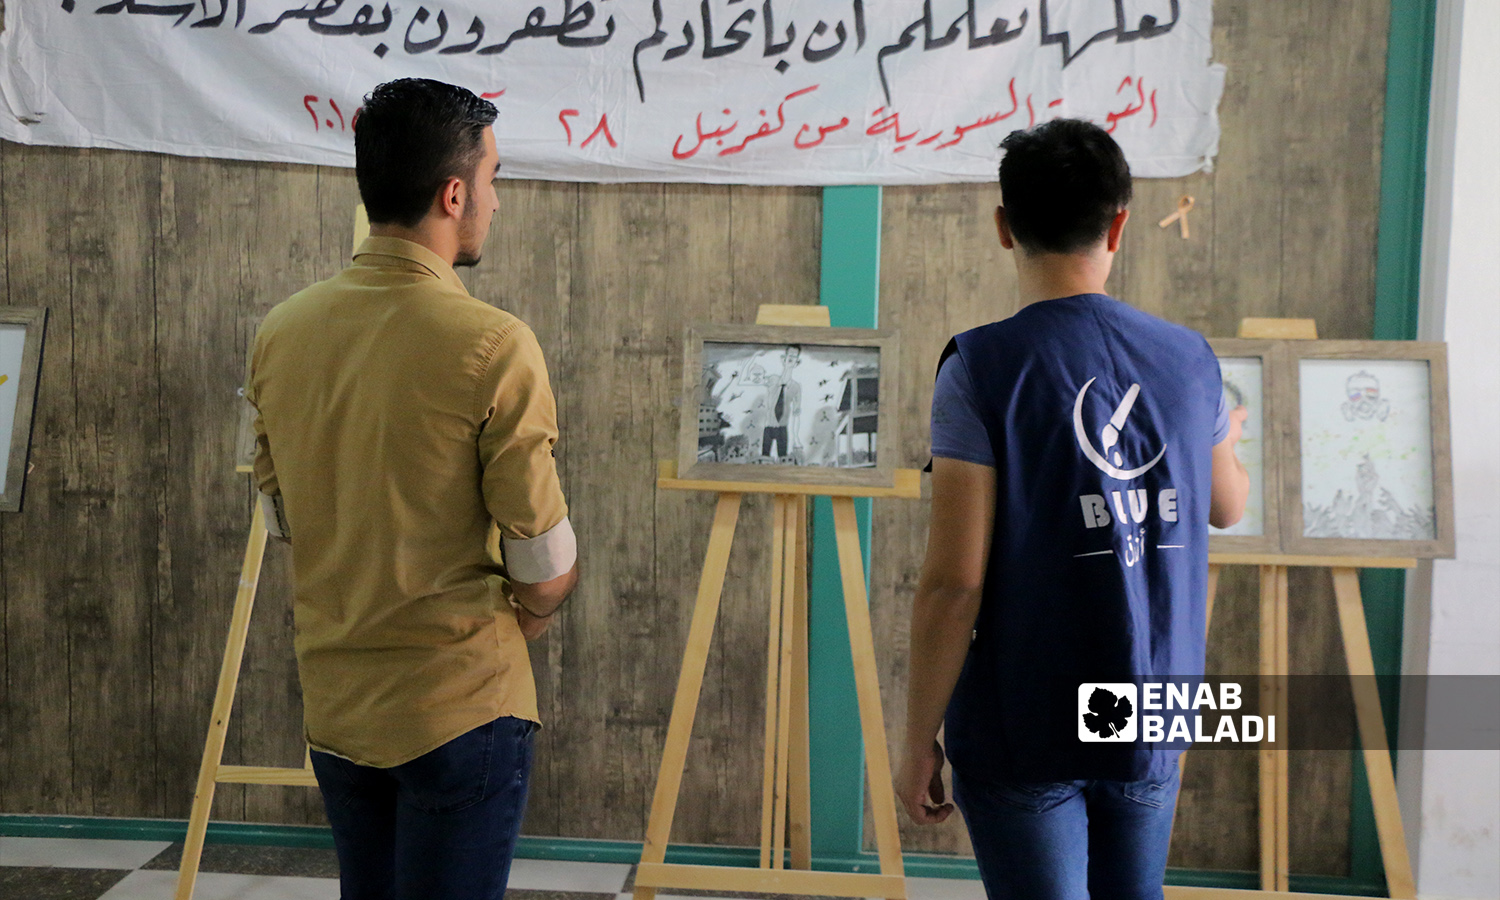 معرض فني إحياءً لذكرى مجزرة كيماوي الغوطة الشرقية في مدينة إعزاز - 21 آب 2021 (عنب بلدي - وليد عثمان)